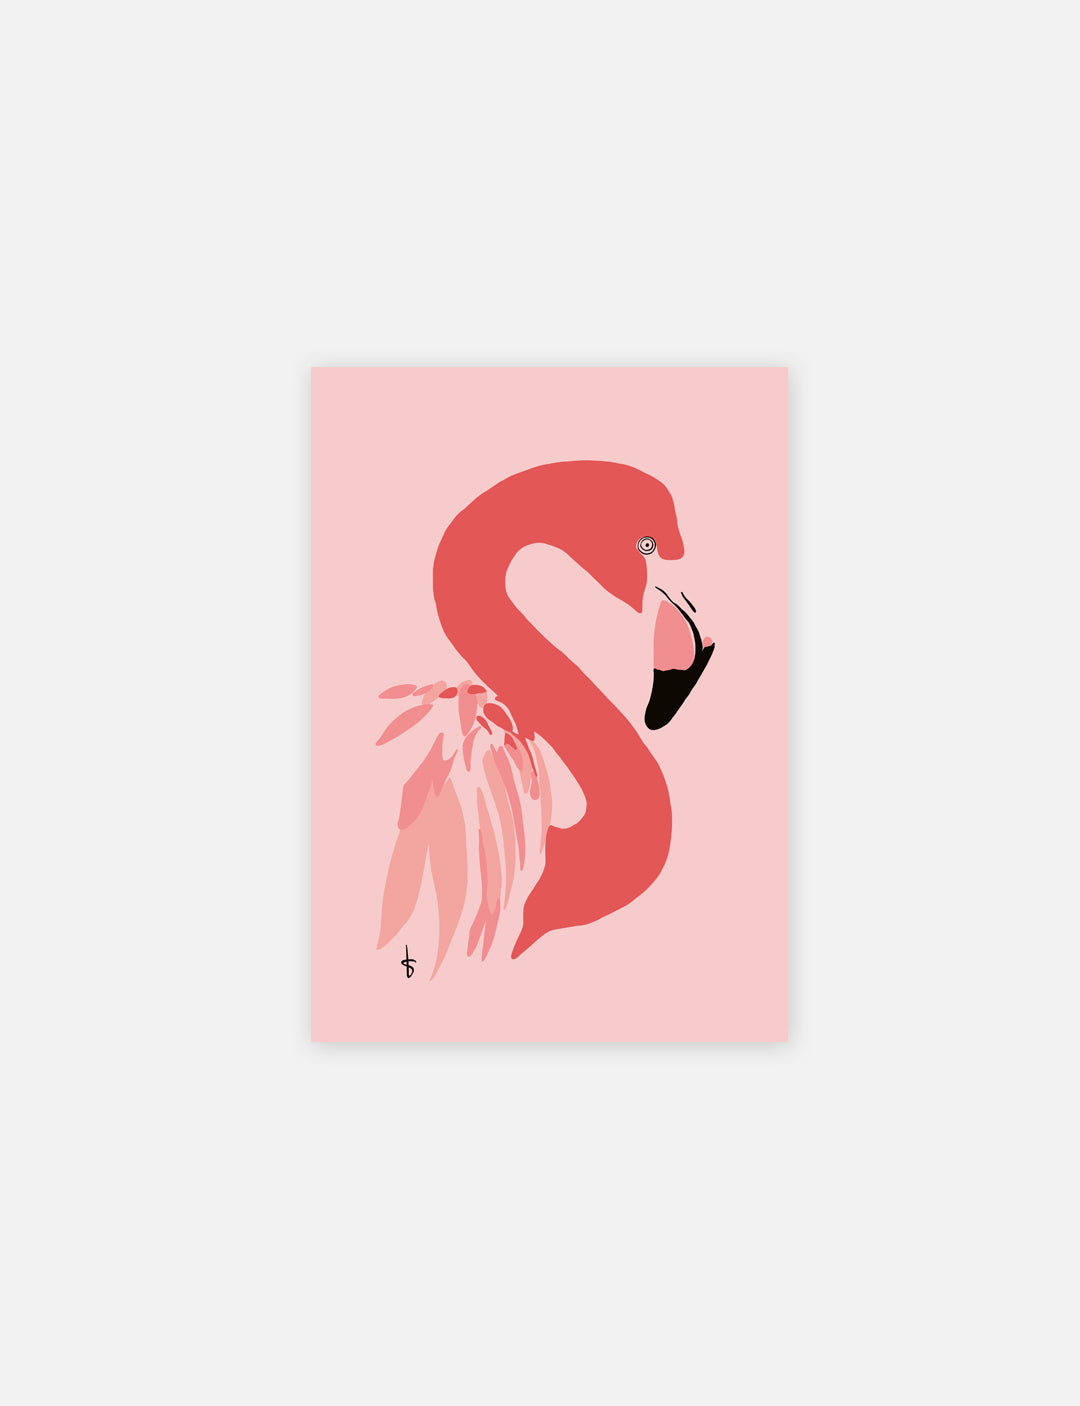 Fleurige poster kinderkamer met handgetekende Flamingo illustratie.Verkrijgbaar op A4 en A3 formaat. (Exclusief lijst). Ook leuk om poster babykamer op te vrolijken.